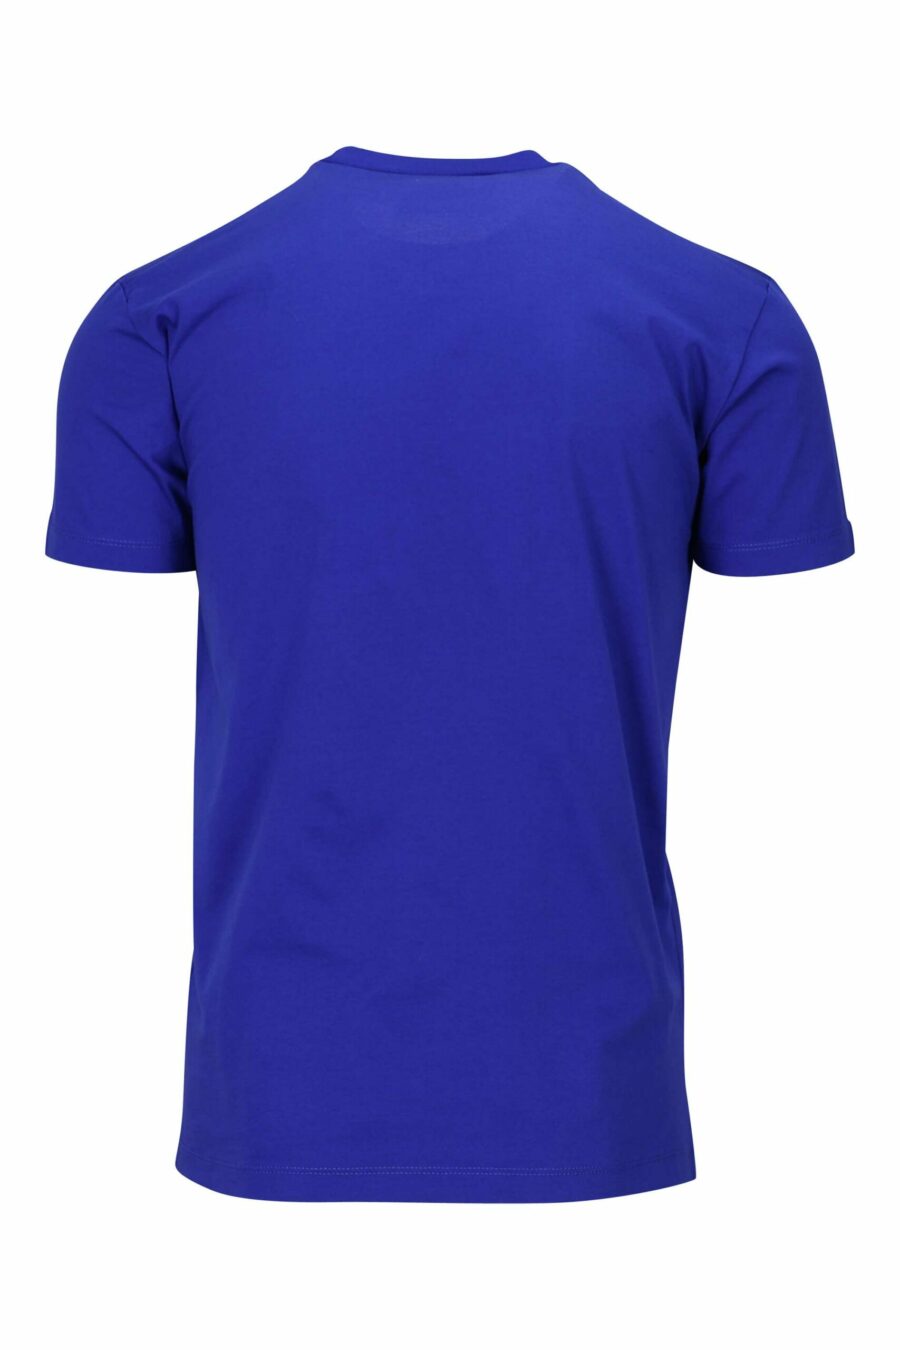 T-shirt azul eléctrica com maxilogo "ícone" branco - 8054148035525 1 à escala